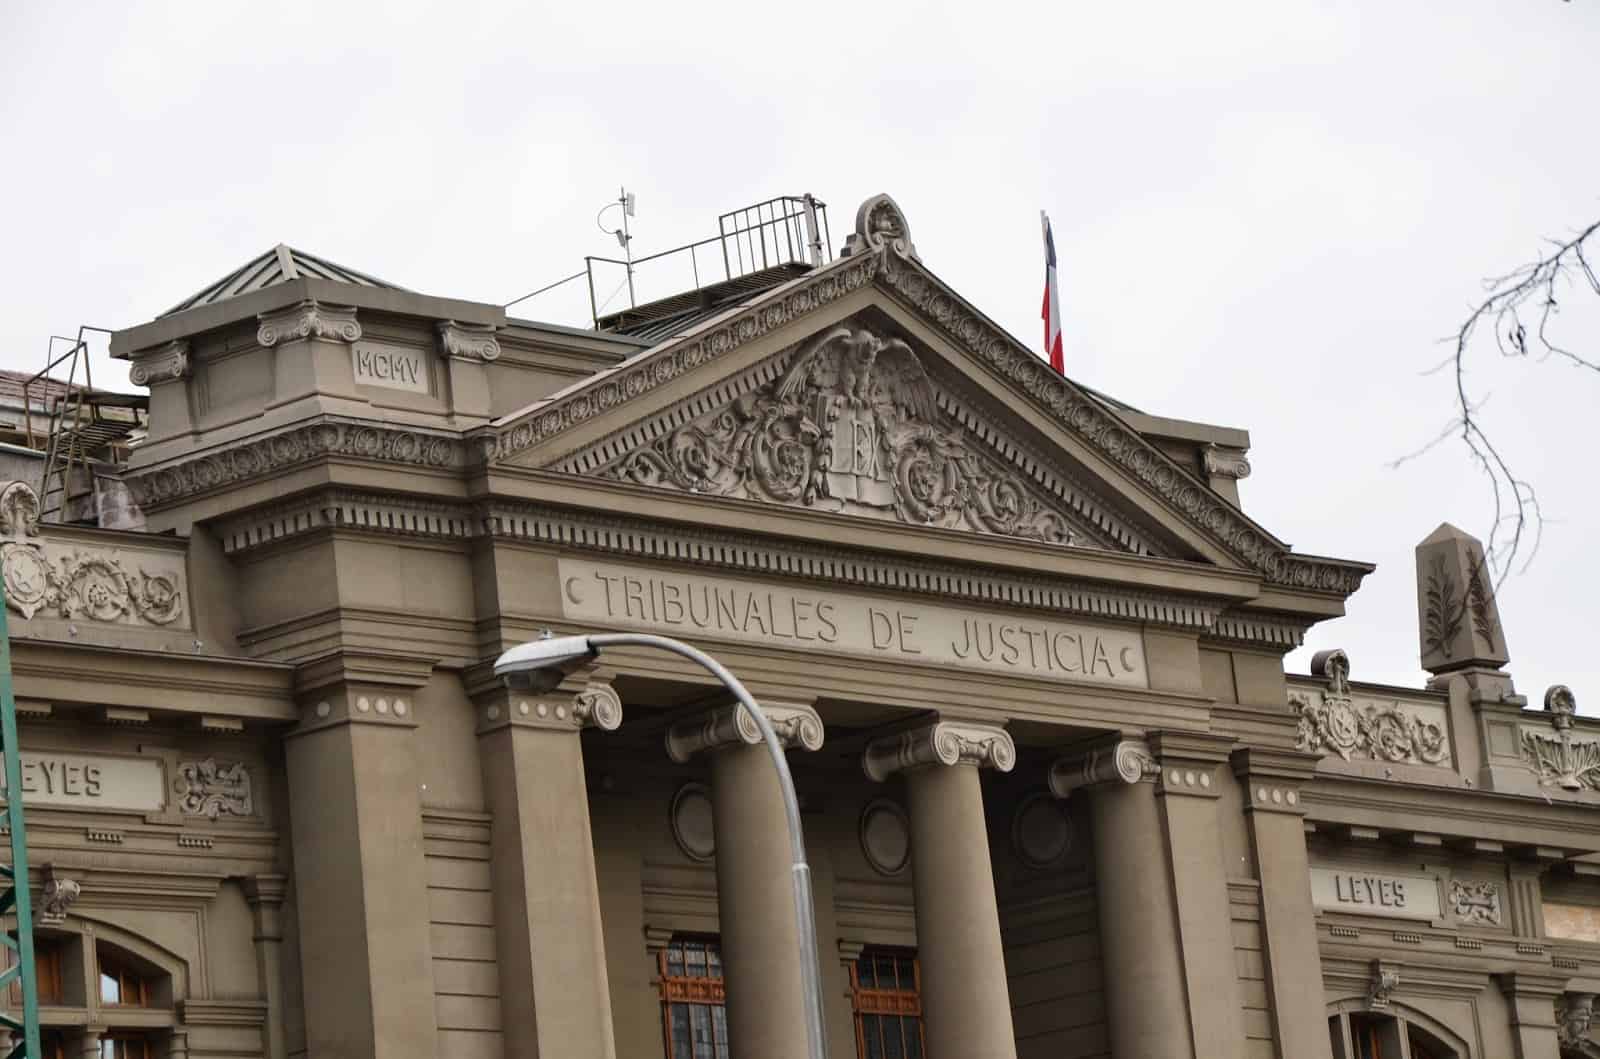 Palacio de los Tribunales de Justicia in Santiago de Chile